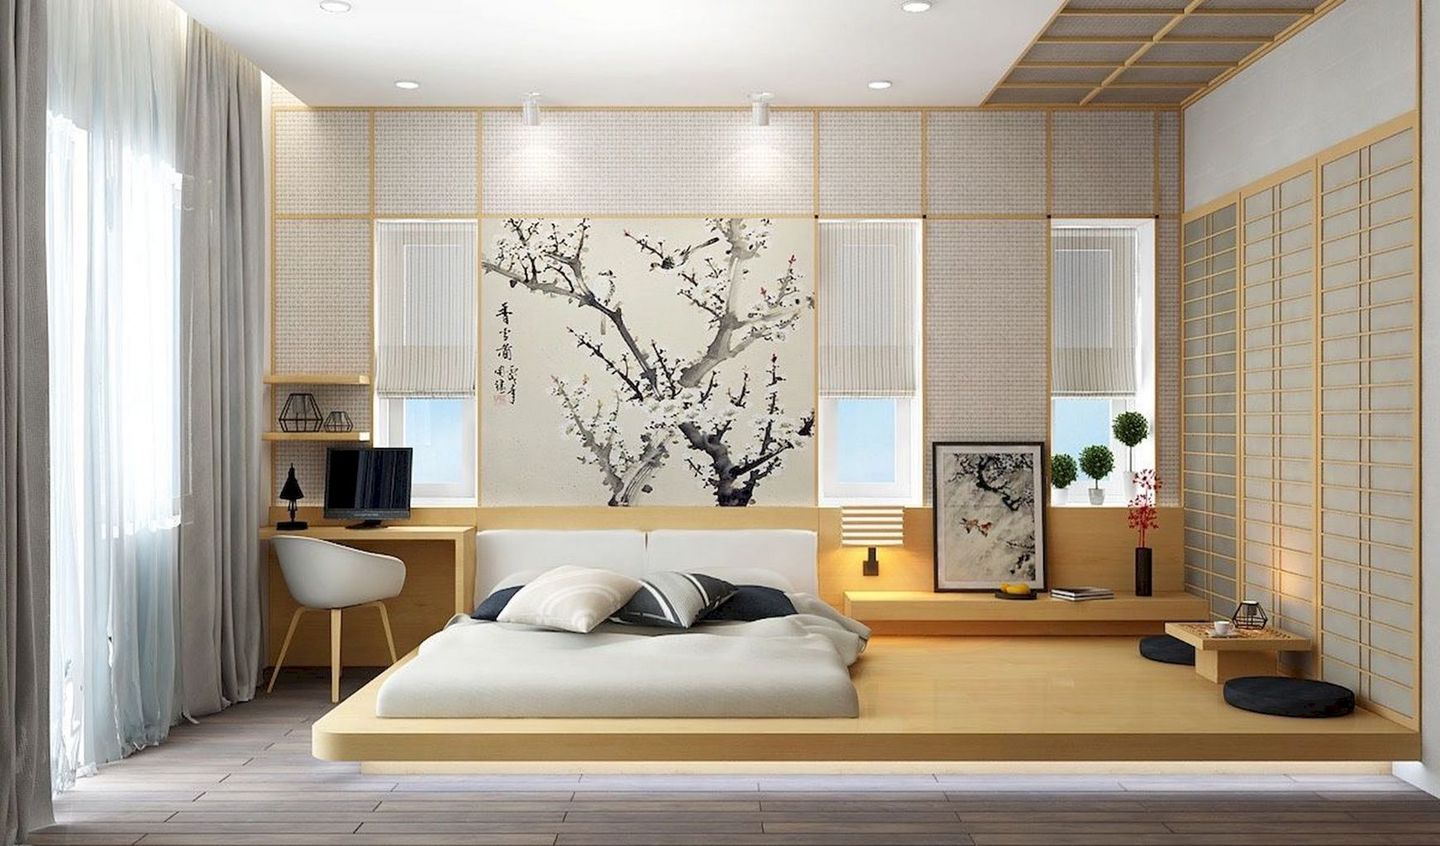 Pemasangan pelat kayu besar serupa lantai bisa menjadi alternatif untuk kamu yang ingin menerapkan desain kamar minimalis ala Jepang.